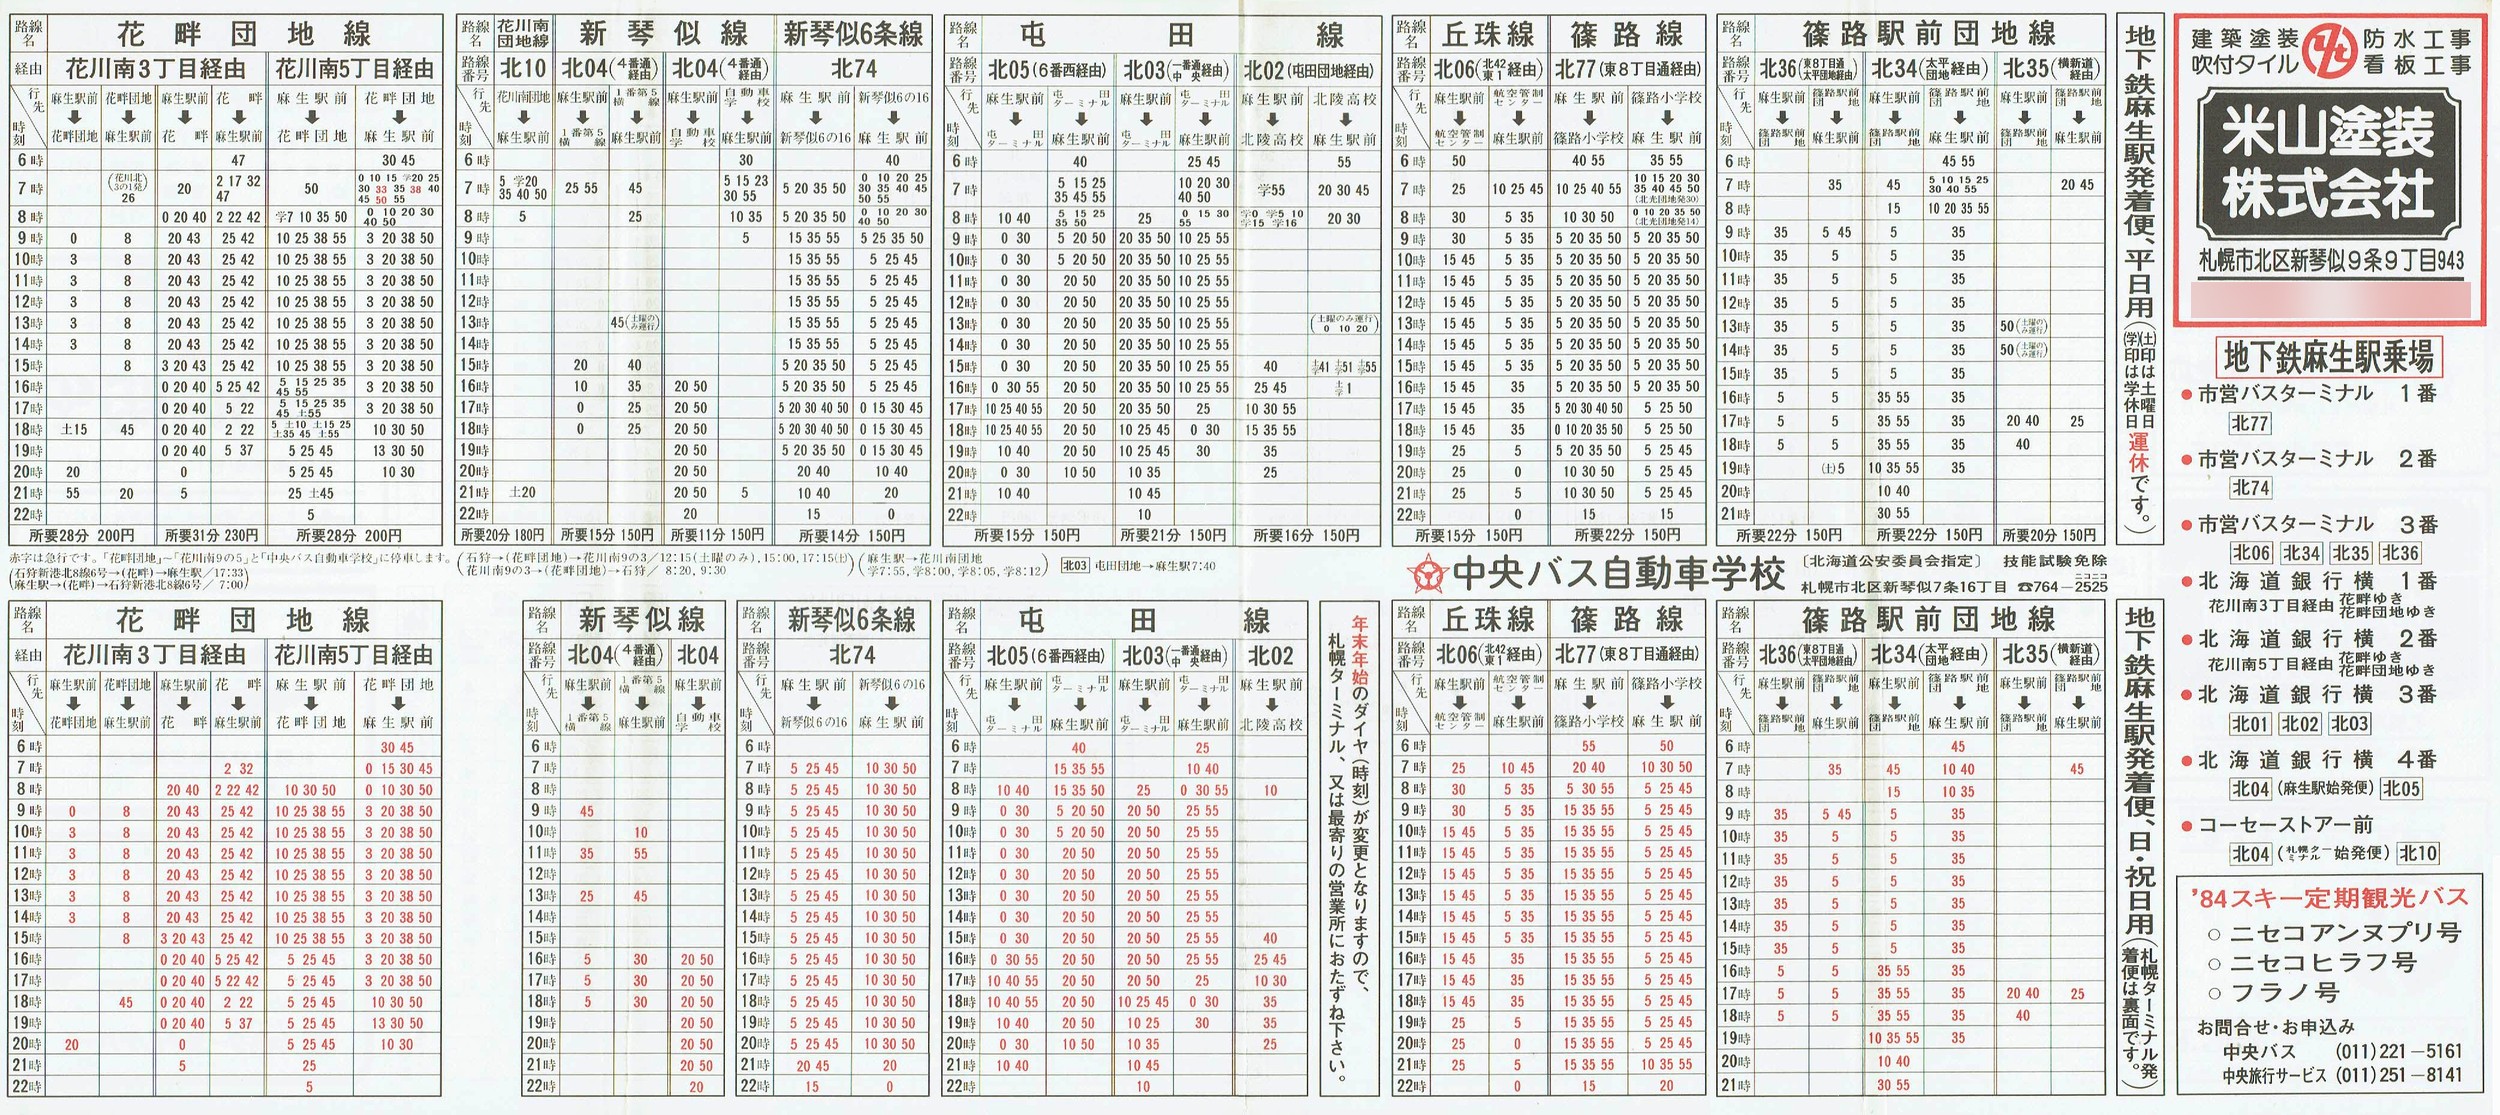 1984-12-01改正_北海道中央バス(札幌)_札幌市内線北方面時刻表裏面